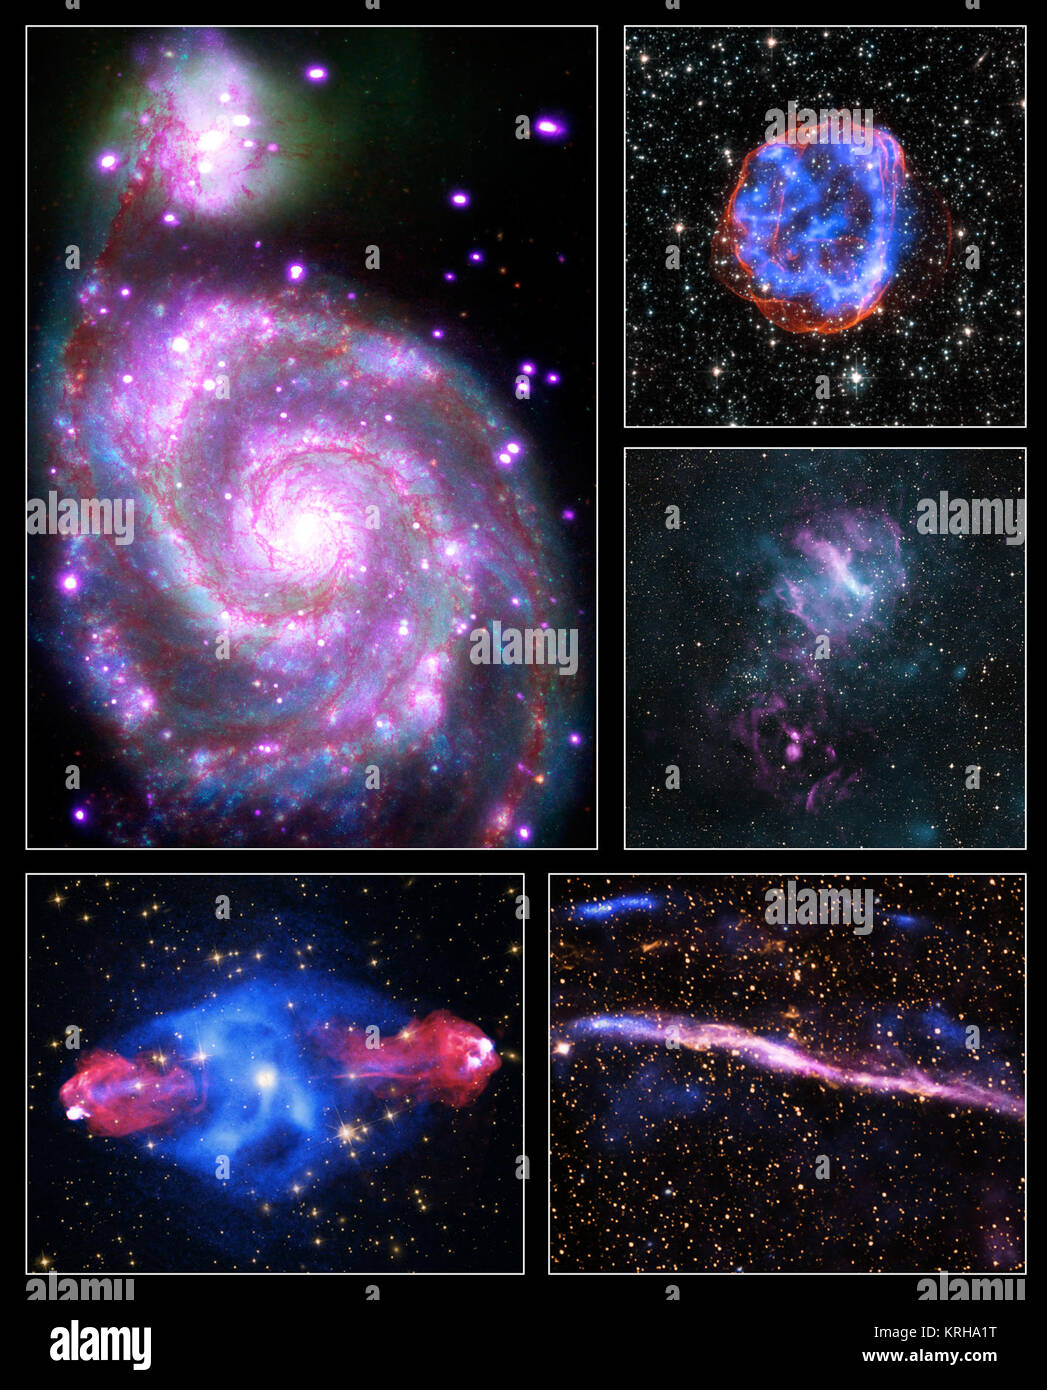 Questo montaggio offre immagini di cinque oggetti diversi che vanno da una lontana galassia relativamente vicina supernova residuo. Ciascuna immagine contiene i raggi X di Chandra lungo con dati provenienti da altri telescopi che rilevano i diversi tipi di luce. Queste immagini sono state rilasciate per commemorare l'inizio dell'Anno Internazionale della luce 2015, un anno di celebrazione dichiarata dalle Nazioni Unite. Queste immagini illustrano come gli astronomi usano diversi tipi di luce insieme per ottenere una visione più completa degli oggetti nello spazio. La NASA-2015IYL-MultiPix-ChandraXRayObservatory-20150122 Foto Stock